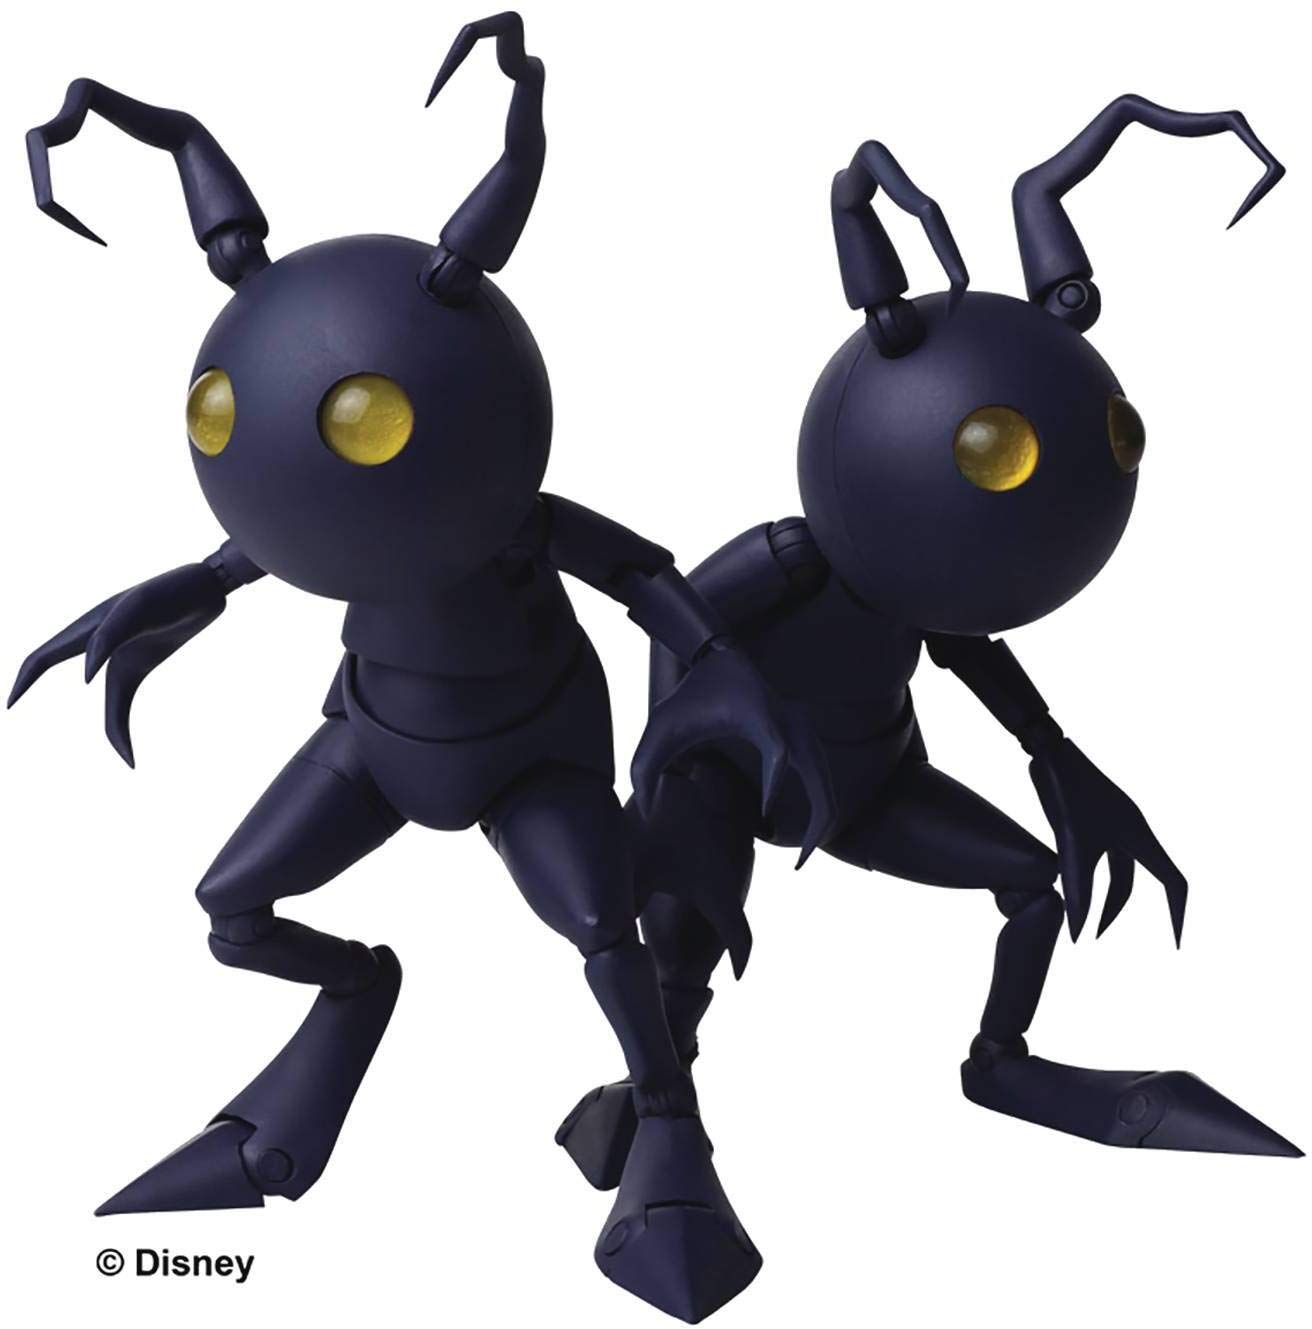 Square Enix Kingdom Hearts III: Shadow Bring Arts Action Figure Set, Multicolor